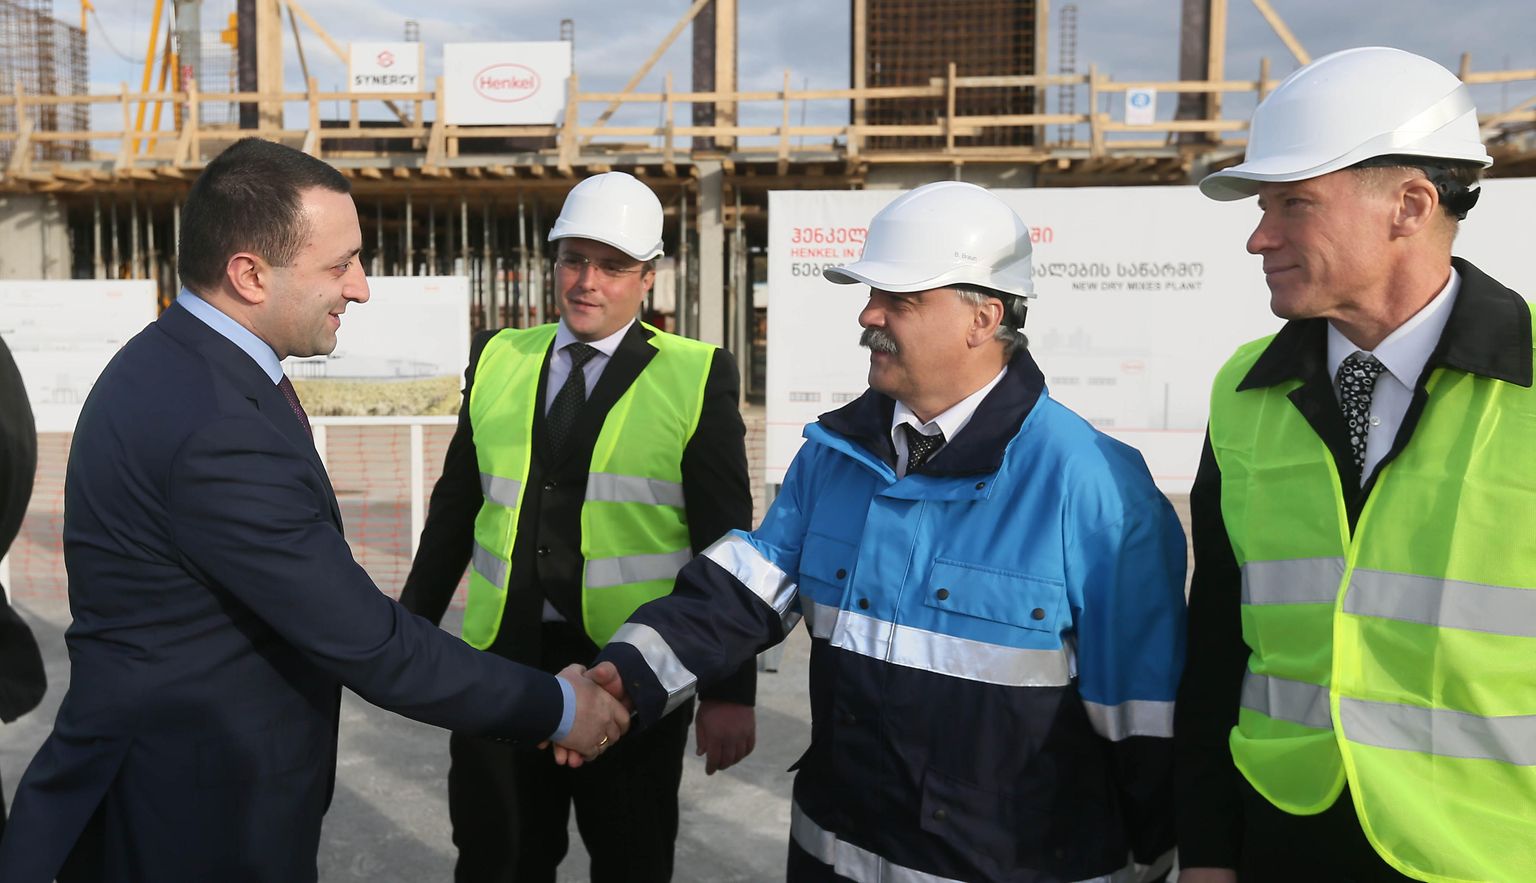 Ираклий Гарибашвили, премьер-министр Грузии, встретился с представителями Henkel на территории завода Ceresit